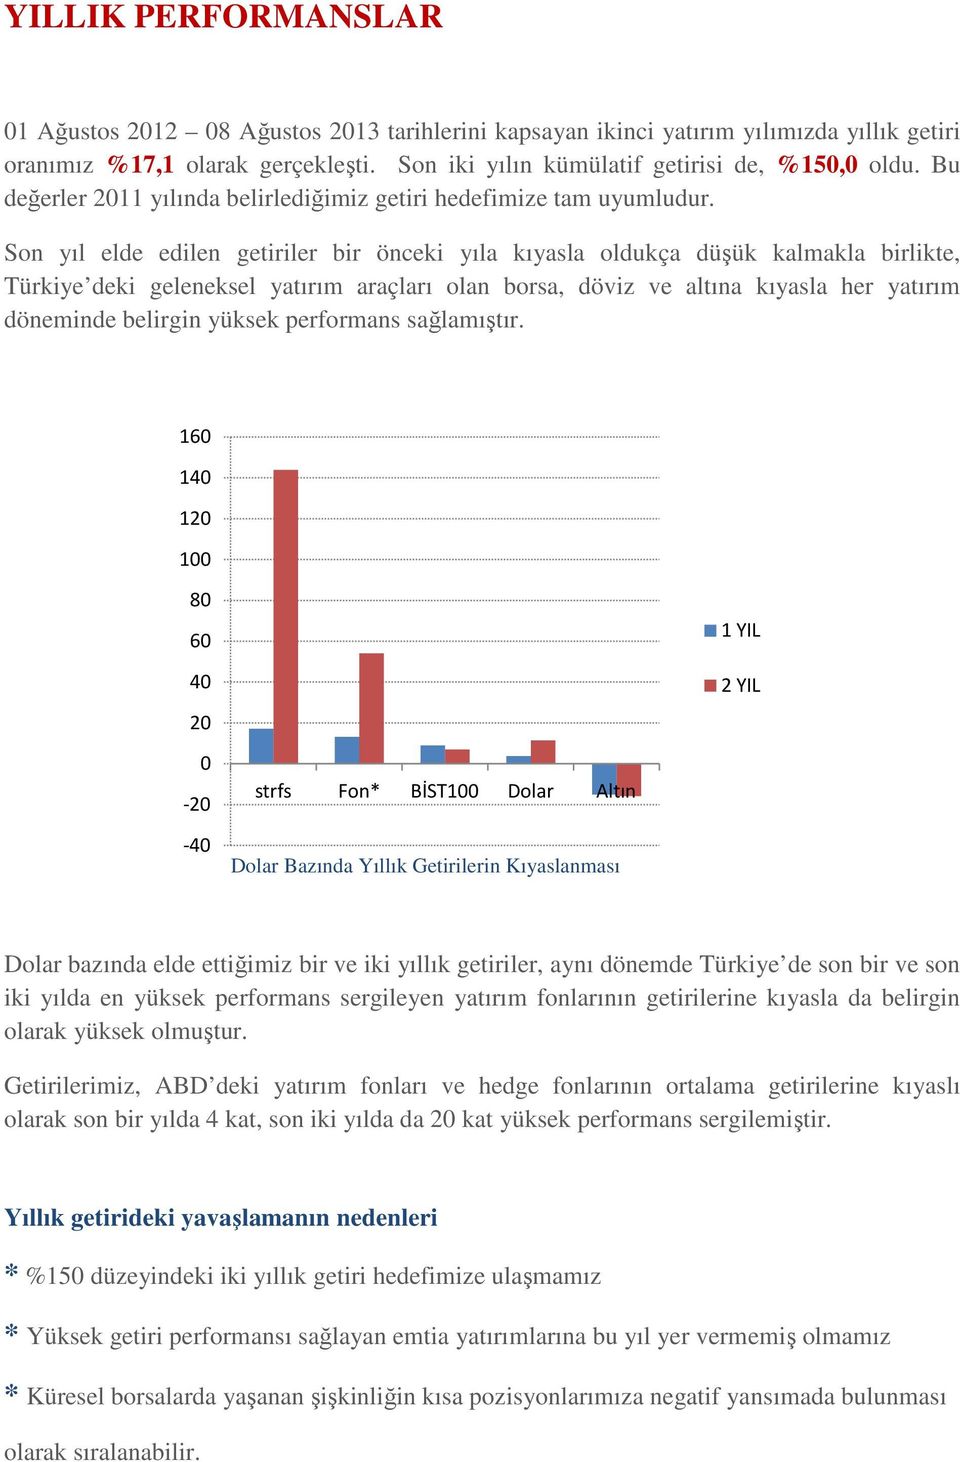 Son yıl elde edilen getiriler bir önceki yıla kıyasla oldukça düşük kalmakla birlikte, Türkiye deki geleneksel yatırım araçları olan borsa, döviz ve altına kıyasla her yatırım döneminde belirgin